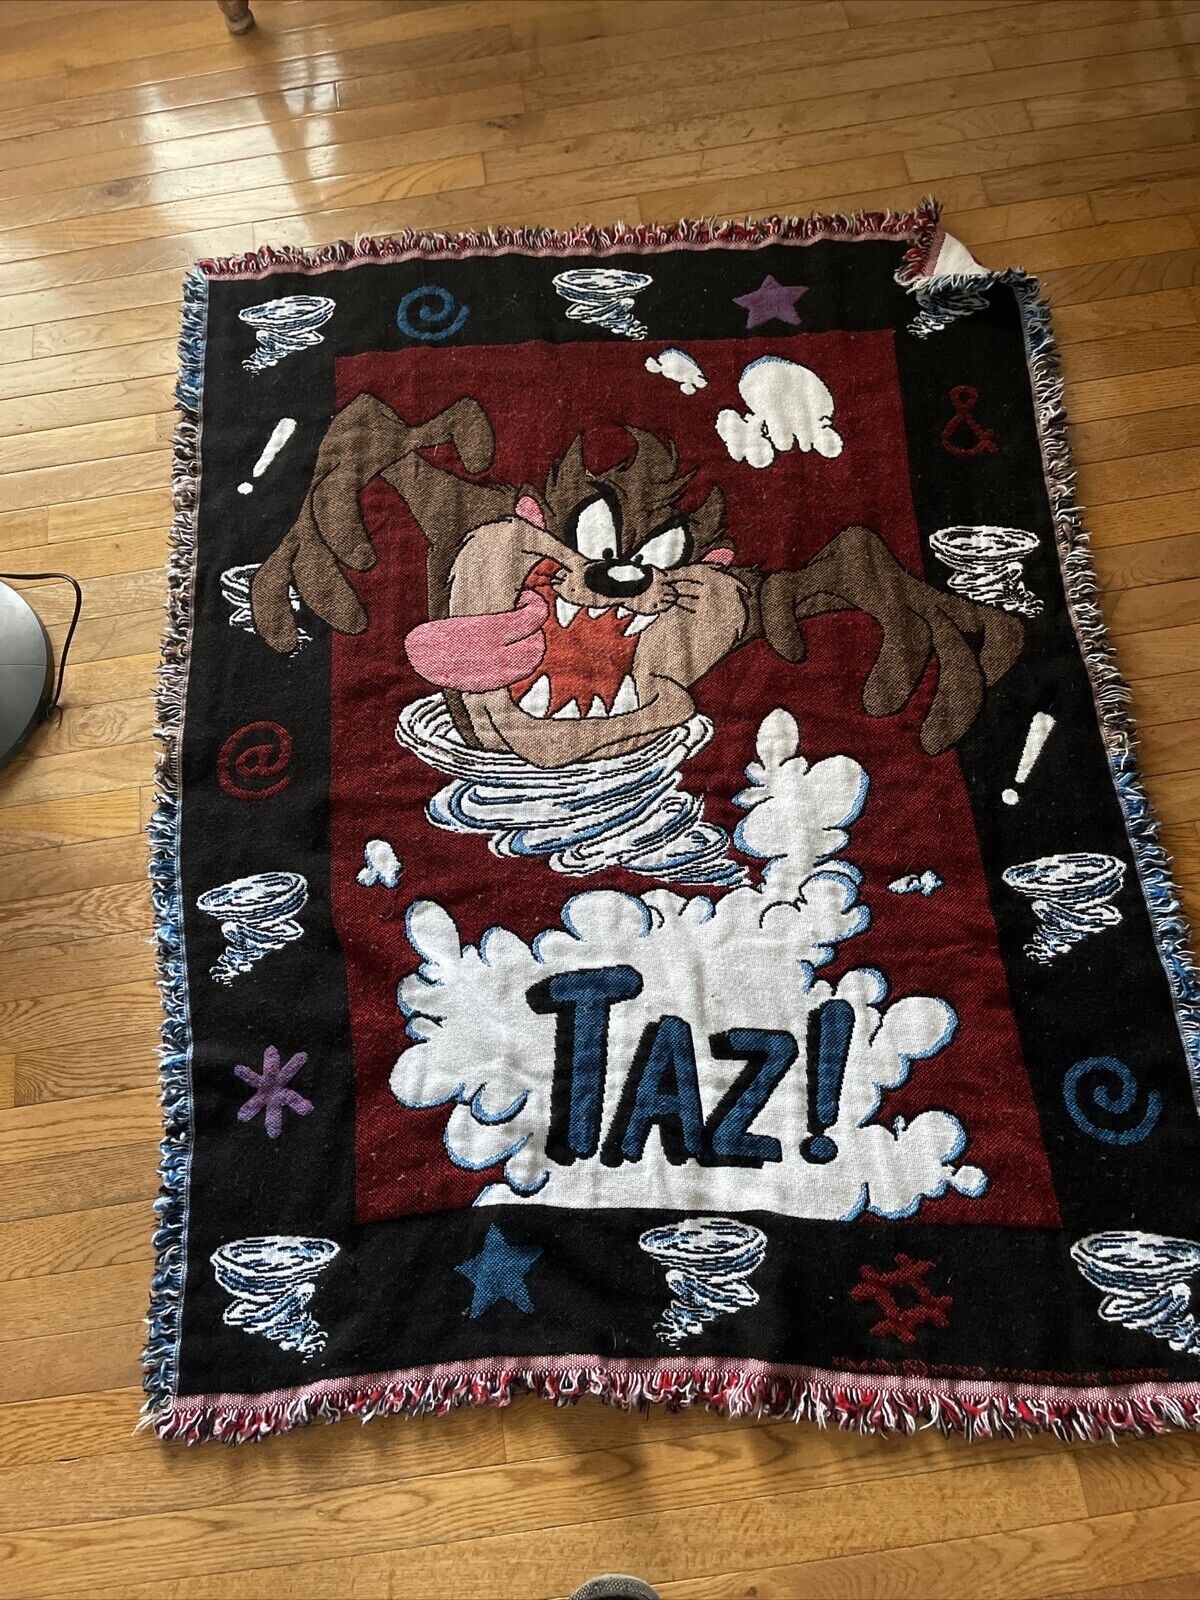 Vintage Warner Brothers TAZ Tazmanian Devil Throw Blanket Tapestry Looney Tunes